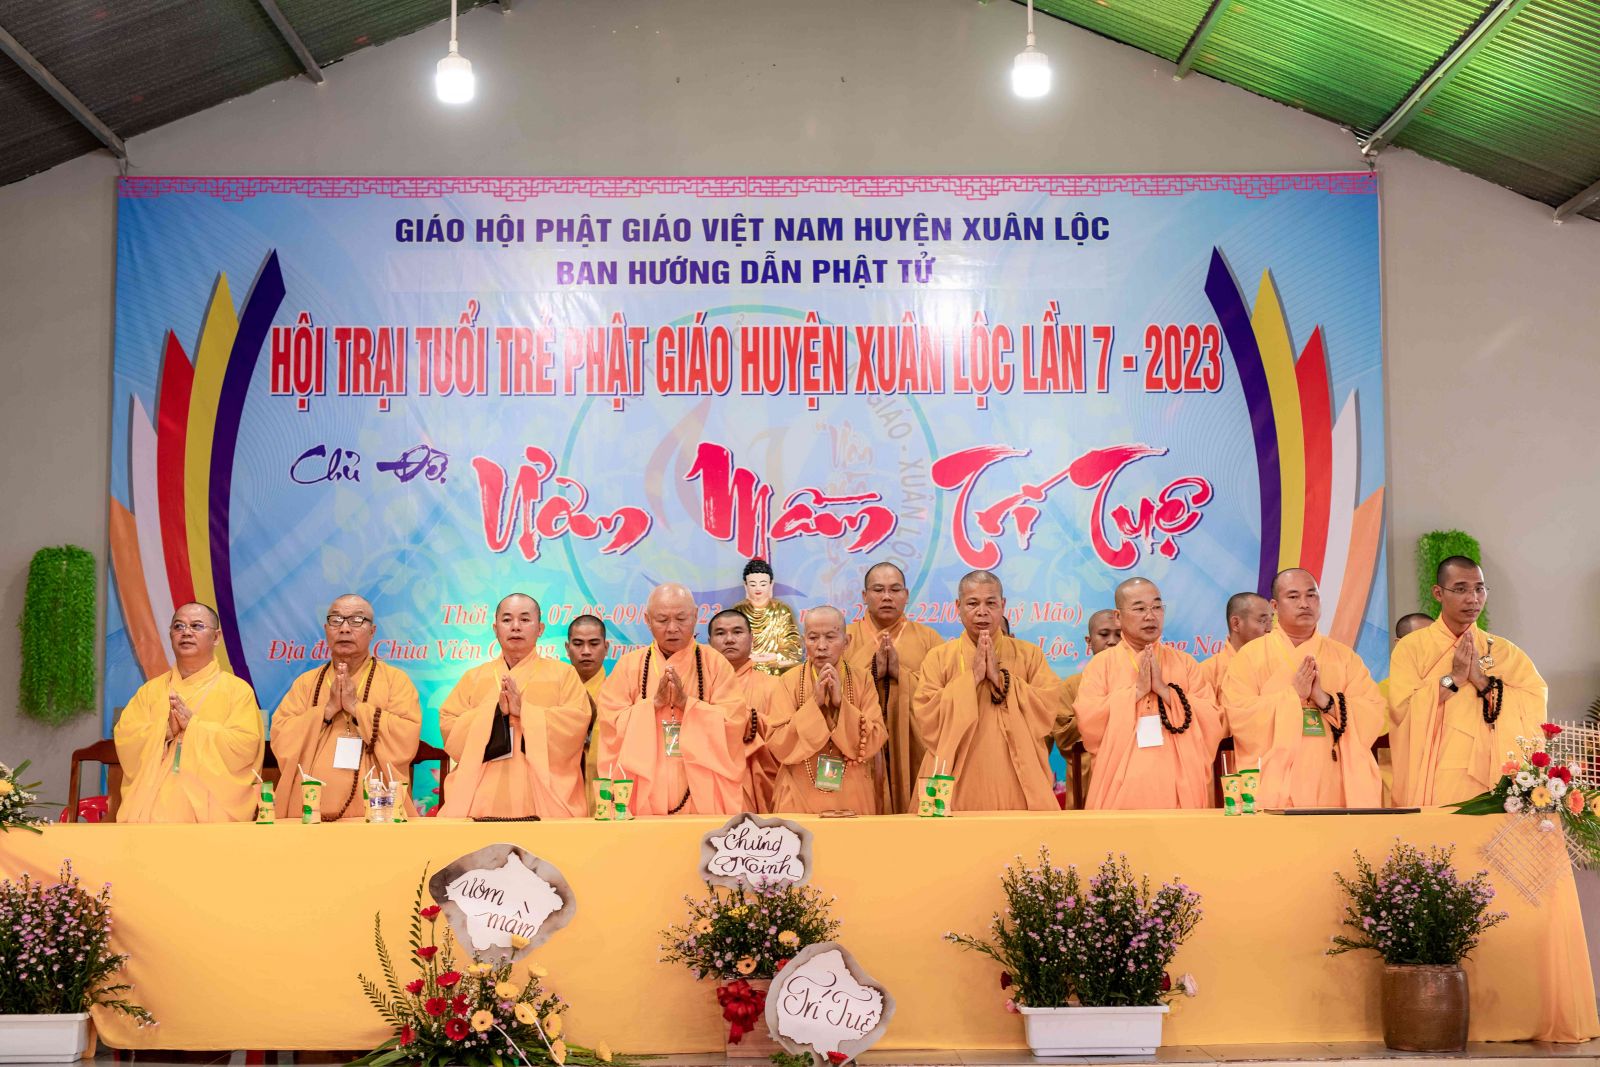 Đồng Nai: Khai mạc Hội trại tuổi trẻ với Phật giáo huyện Xuân Lộc, chủ đề: “Ươm mầm trí tuệ” lần thứ 7, năm 2023